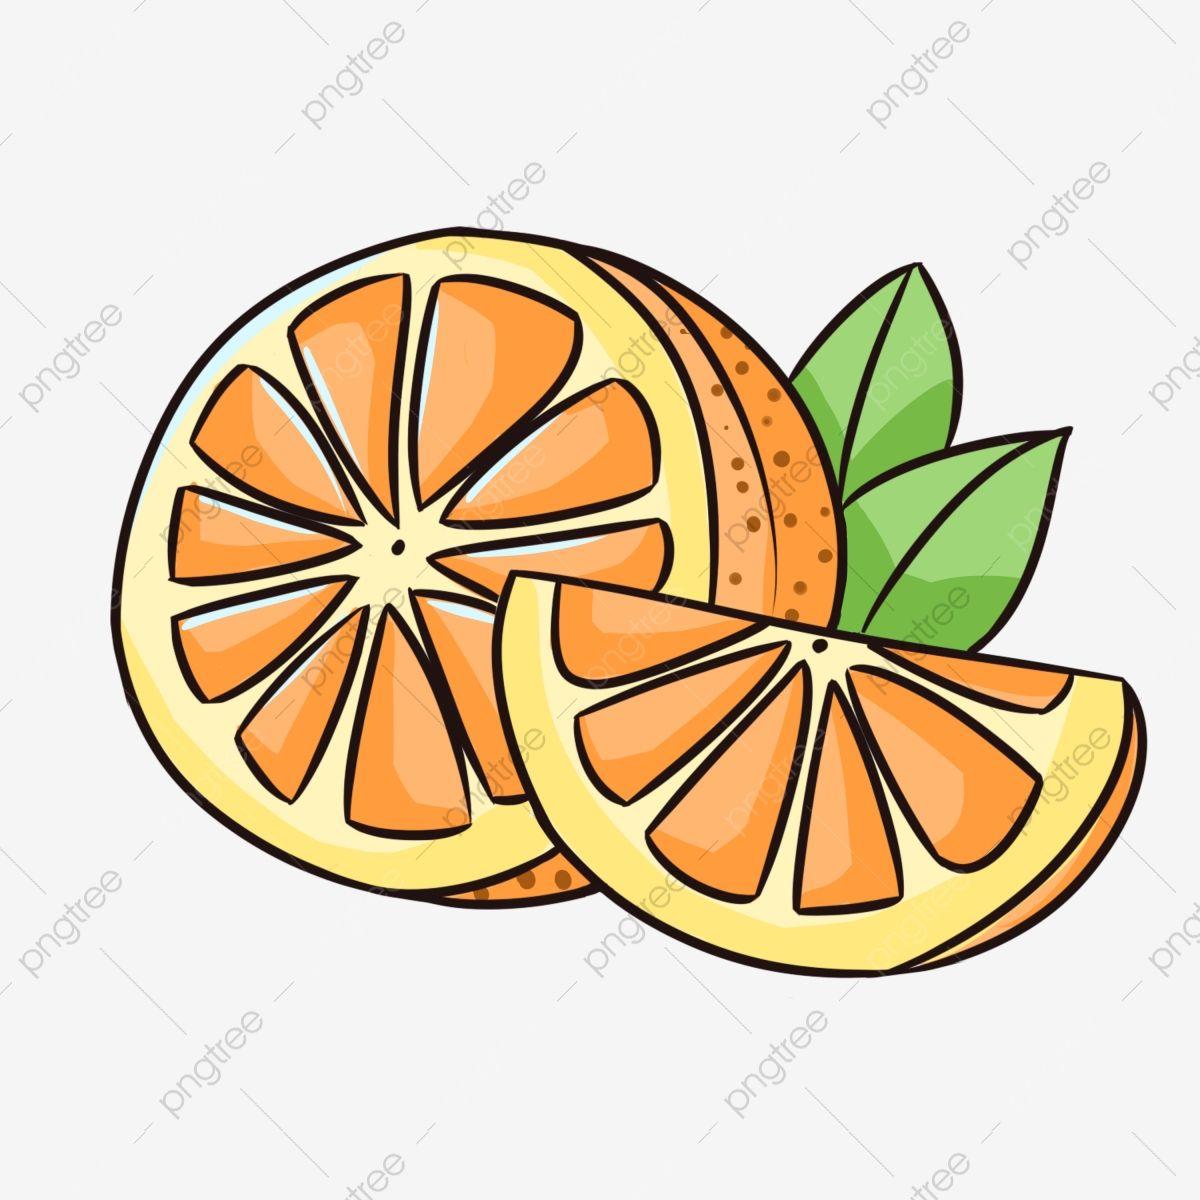 Oranges Logo - Delicious Freshly Squeezed Orange Juice, Orange, Orange Logo, Fresh